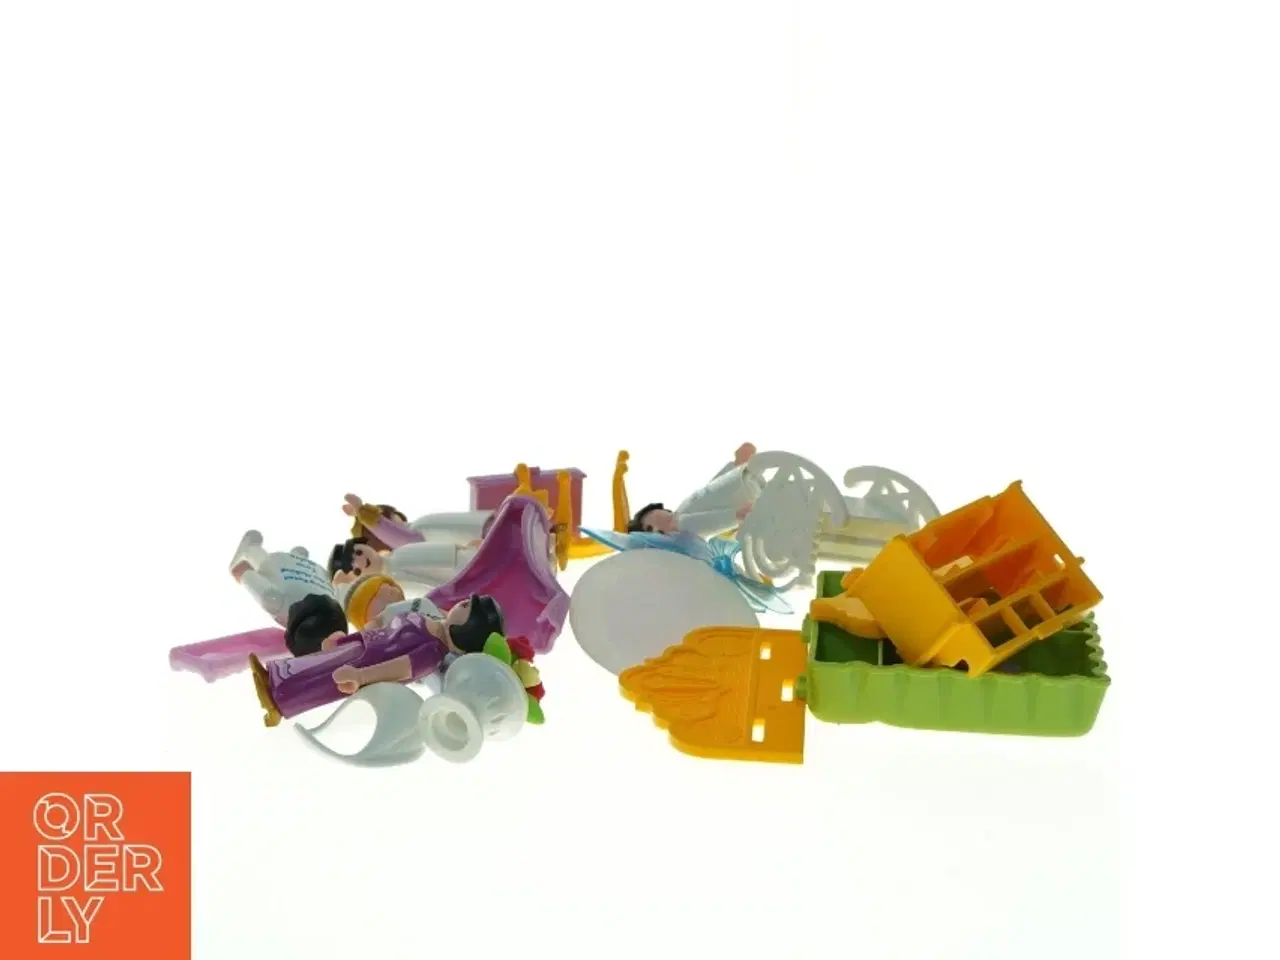 Billede 2 - Playmobil figur og tilbehør fra Playmobil (str. 7 x 3,5 cm til 9 x 8 cm)